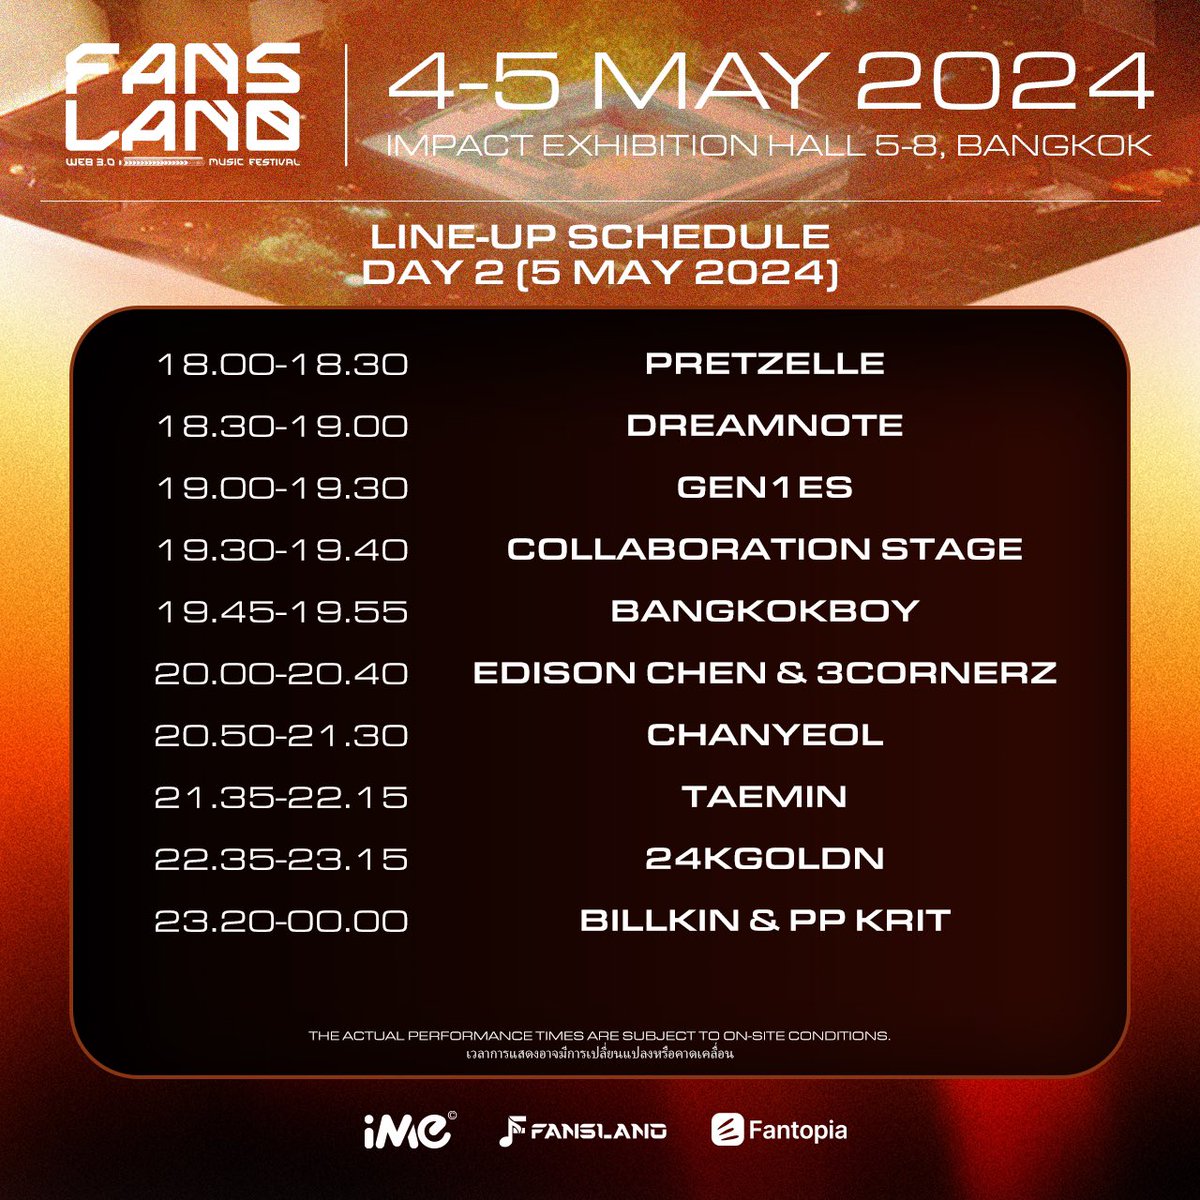 📢 ประกาศลำดับการแสดง Fansland Music Festival 2024 in Bangkok อัดแน่นไปกับโชว์พิเศษมากมายจากทุกศิลปิน จัดเต็มแสงสีเสียงโปรดักชั่นอย่างยิ่งใหญ่ แล้วเจอกัน 🗓️ 4-5 พฤษภาคม 2567 📍IMPACT EXHIBITION HALL 5-8 #fanslandmusicfestival #fansland #web3 #WAGMI #iMe #iMeThailand #iMeAsia